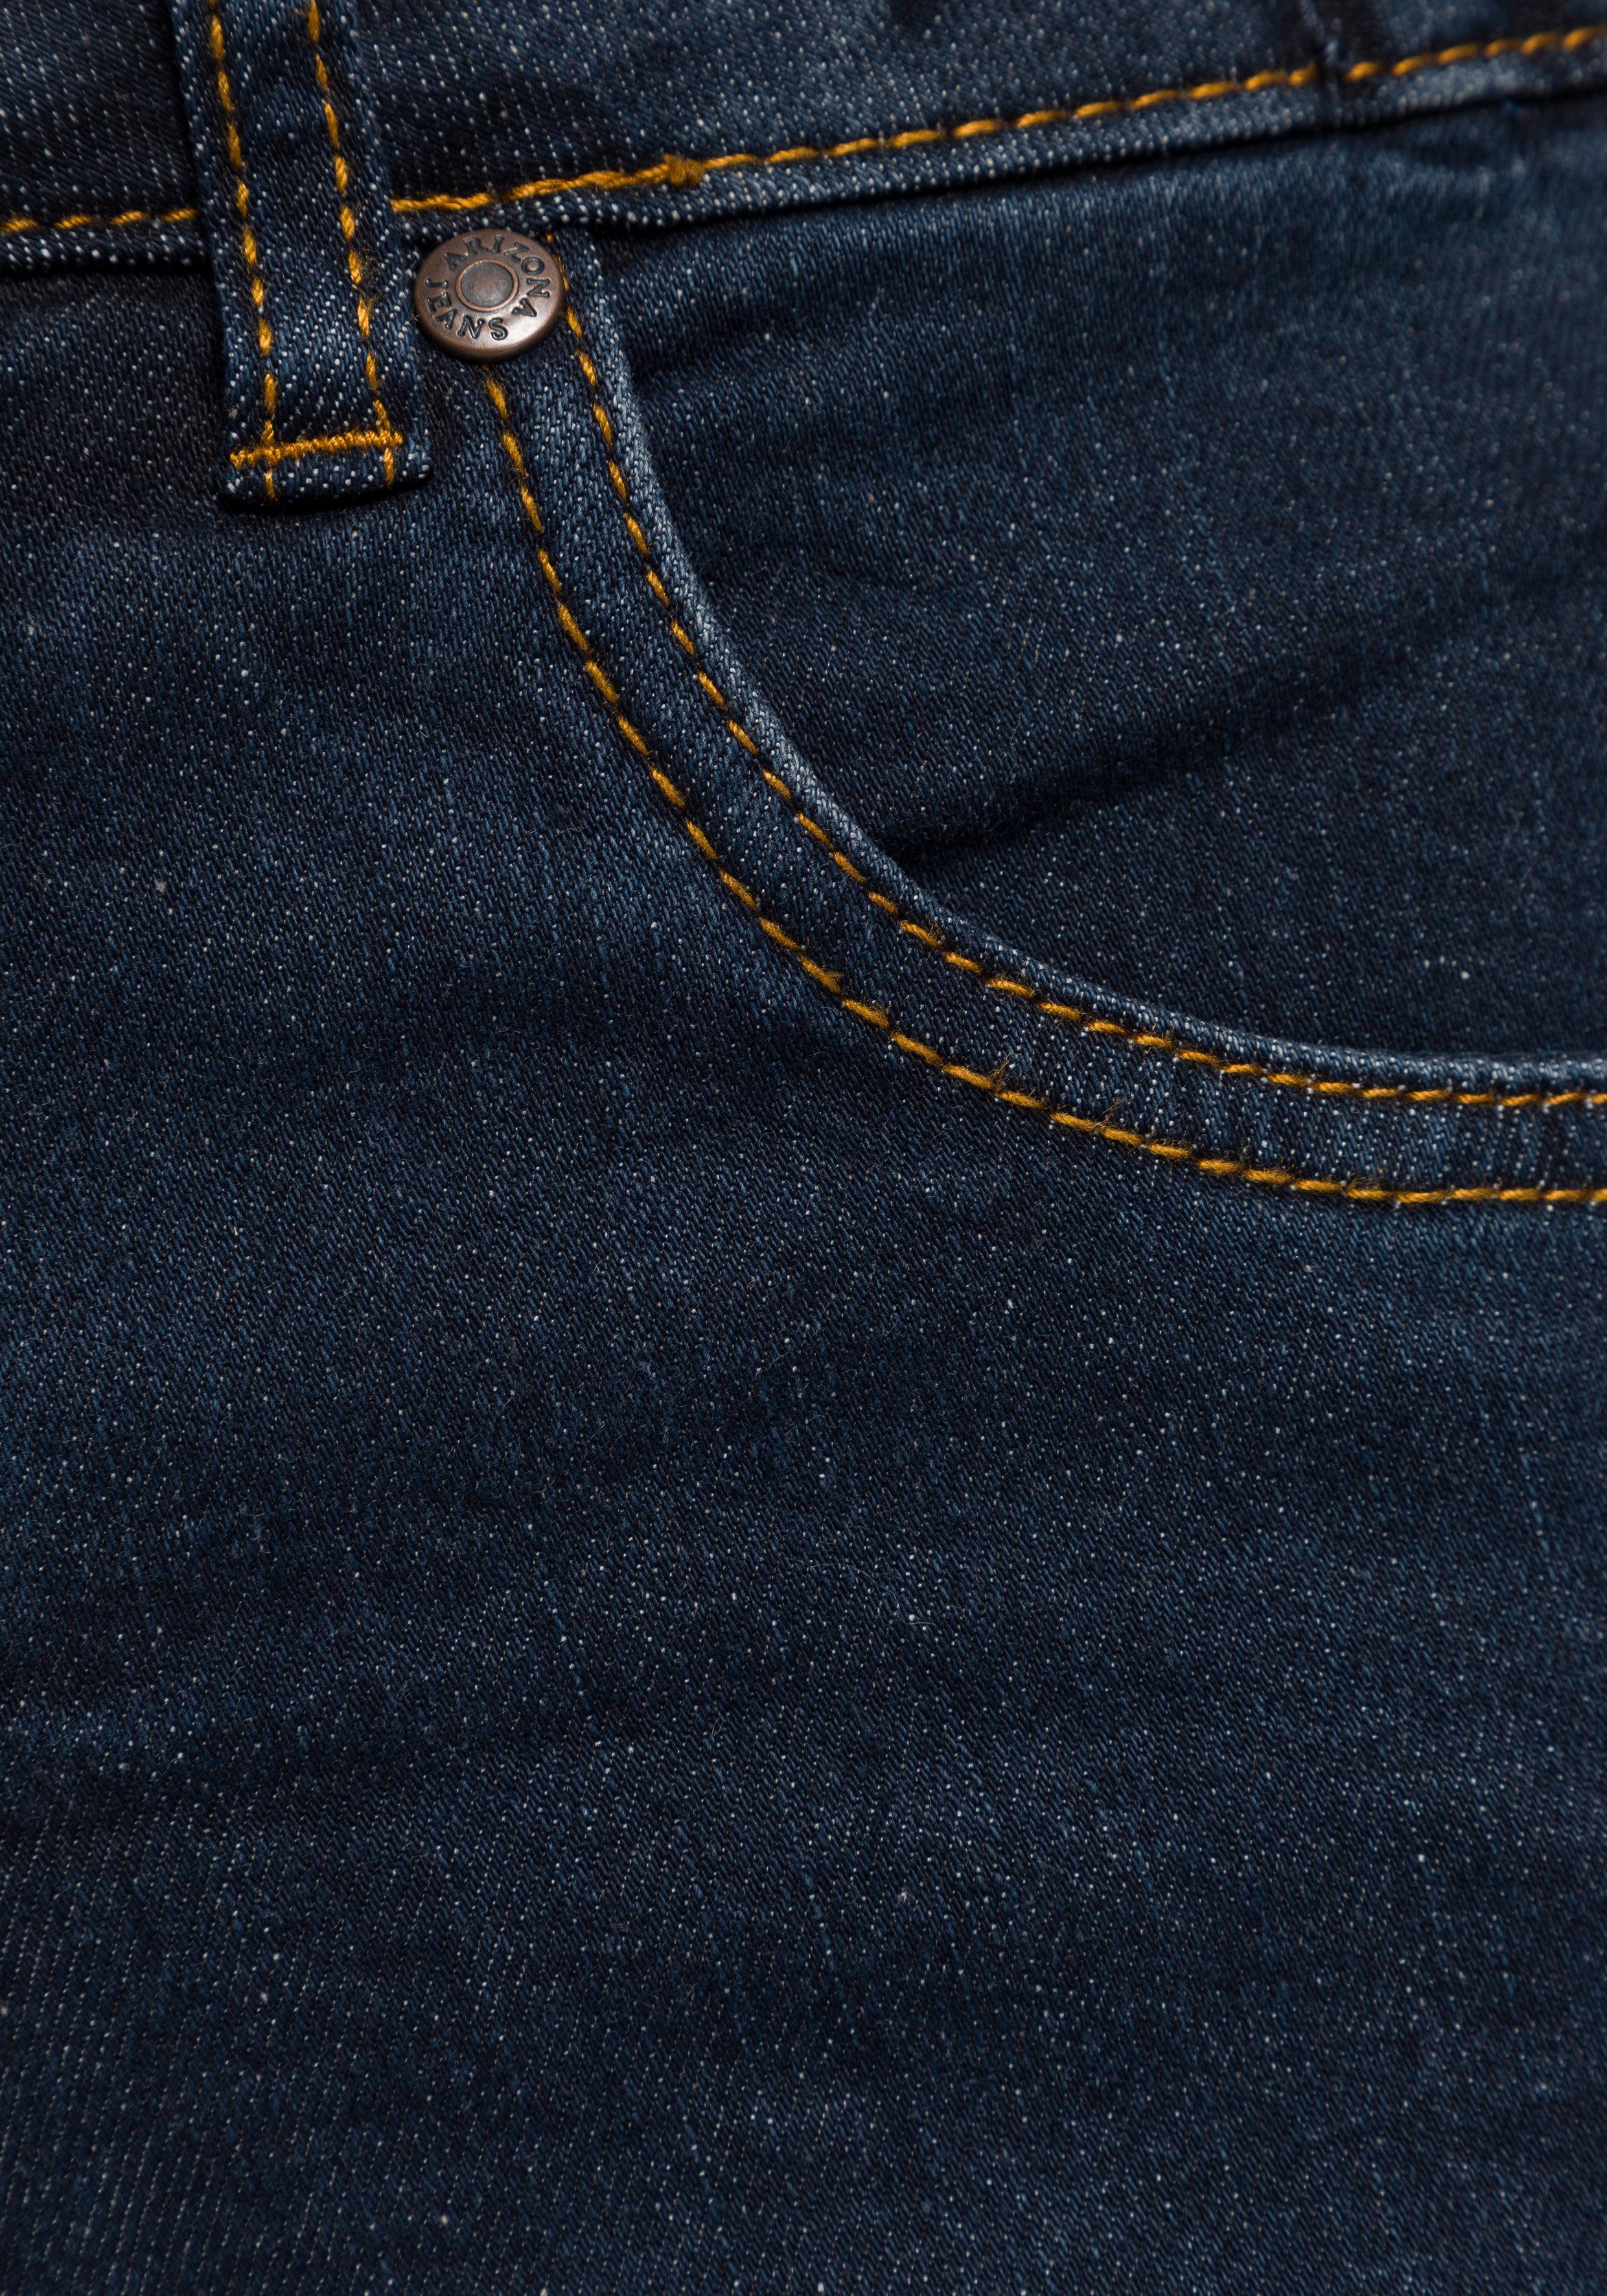 Arizona Slim-fit-Jeans Bund mit Gummizugeinsatz High seitlichem Waist rinsed